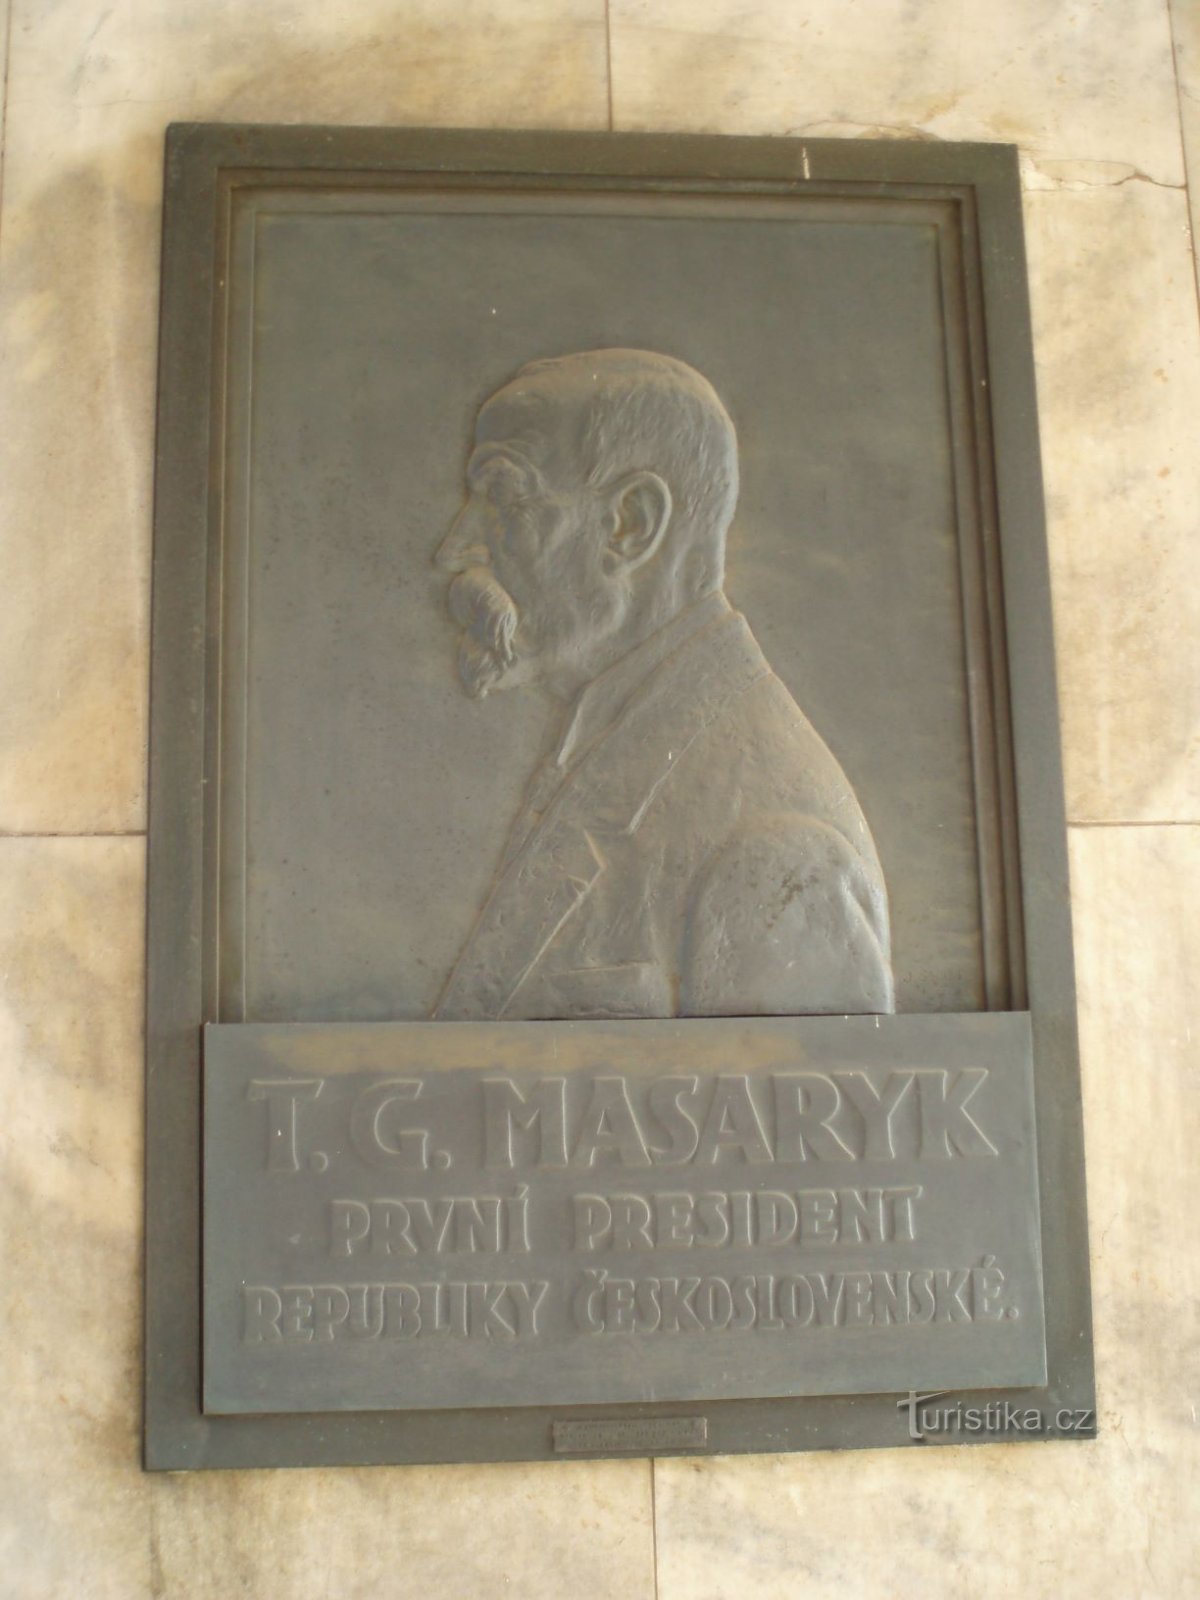 赫拉德茨克拉洛韦大学医院的纪念牌匾（29.11.2011 年 XNUMX 月 XNUMX 日）